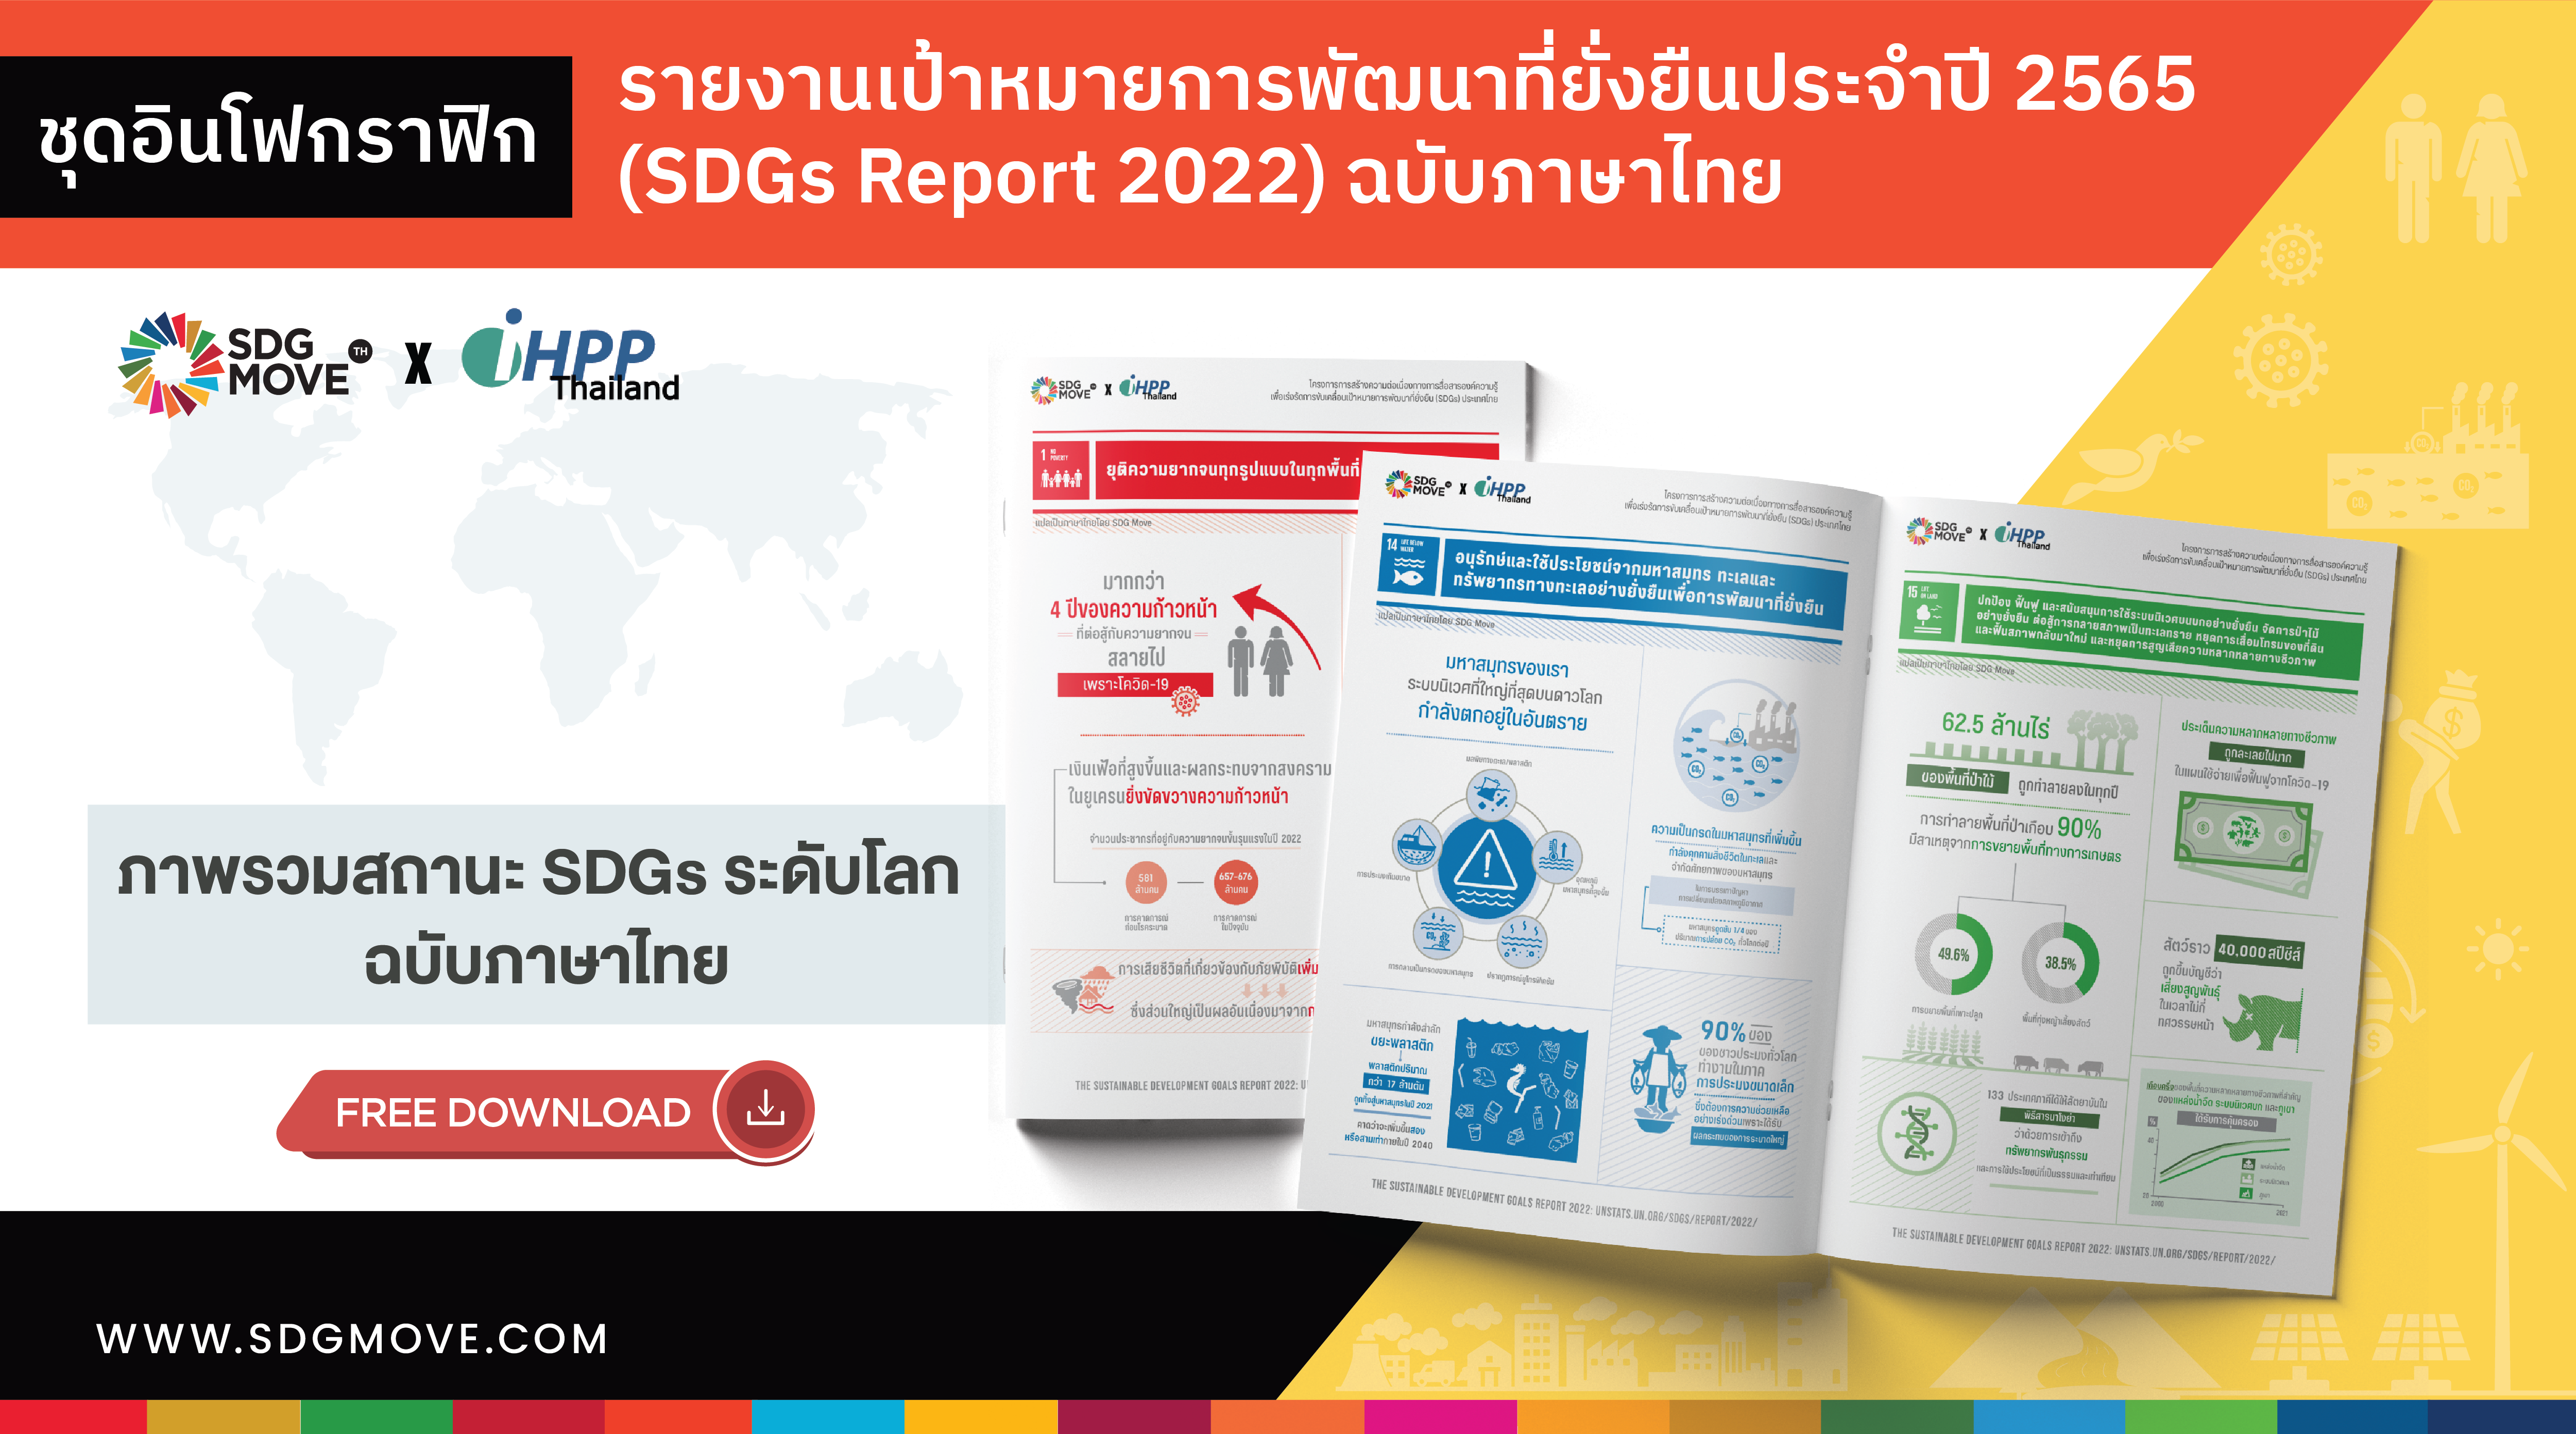 ชุดอินโฟกราฟิก รายงานเป้าหมายการพัฒนาที่ยั่งยืนประจำปี 2565 (SDGs Report 2022) ฉบับภาษาไทย